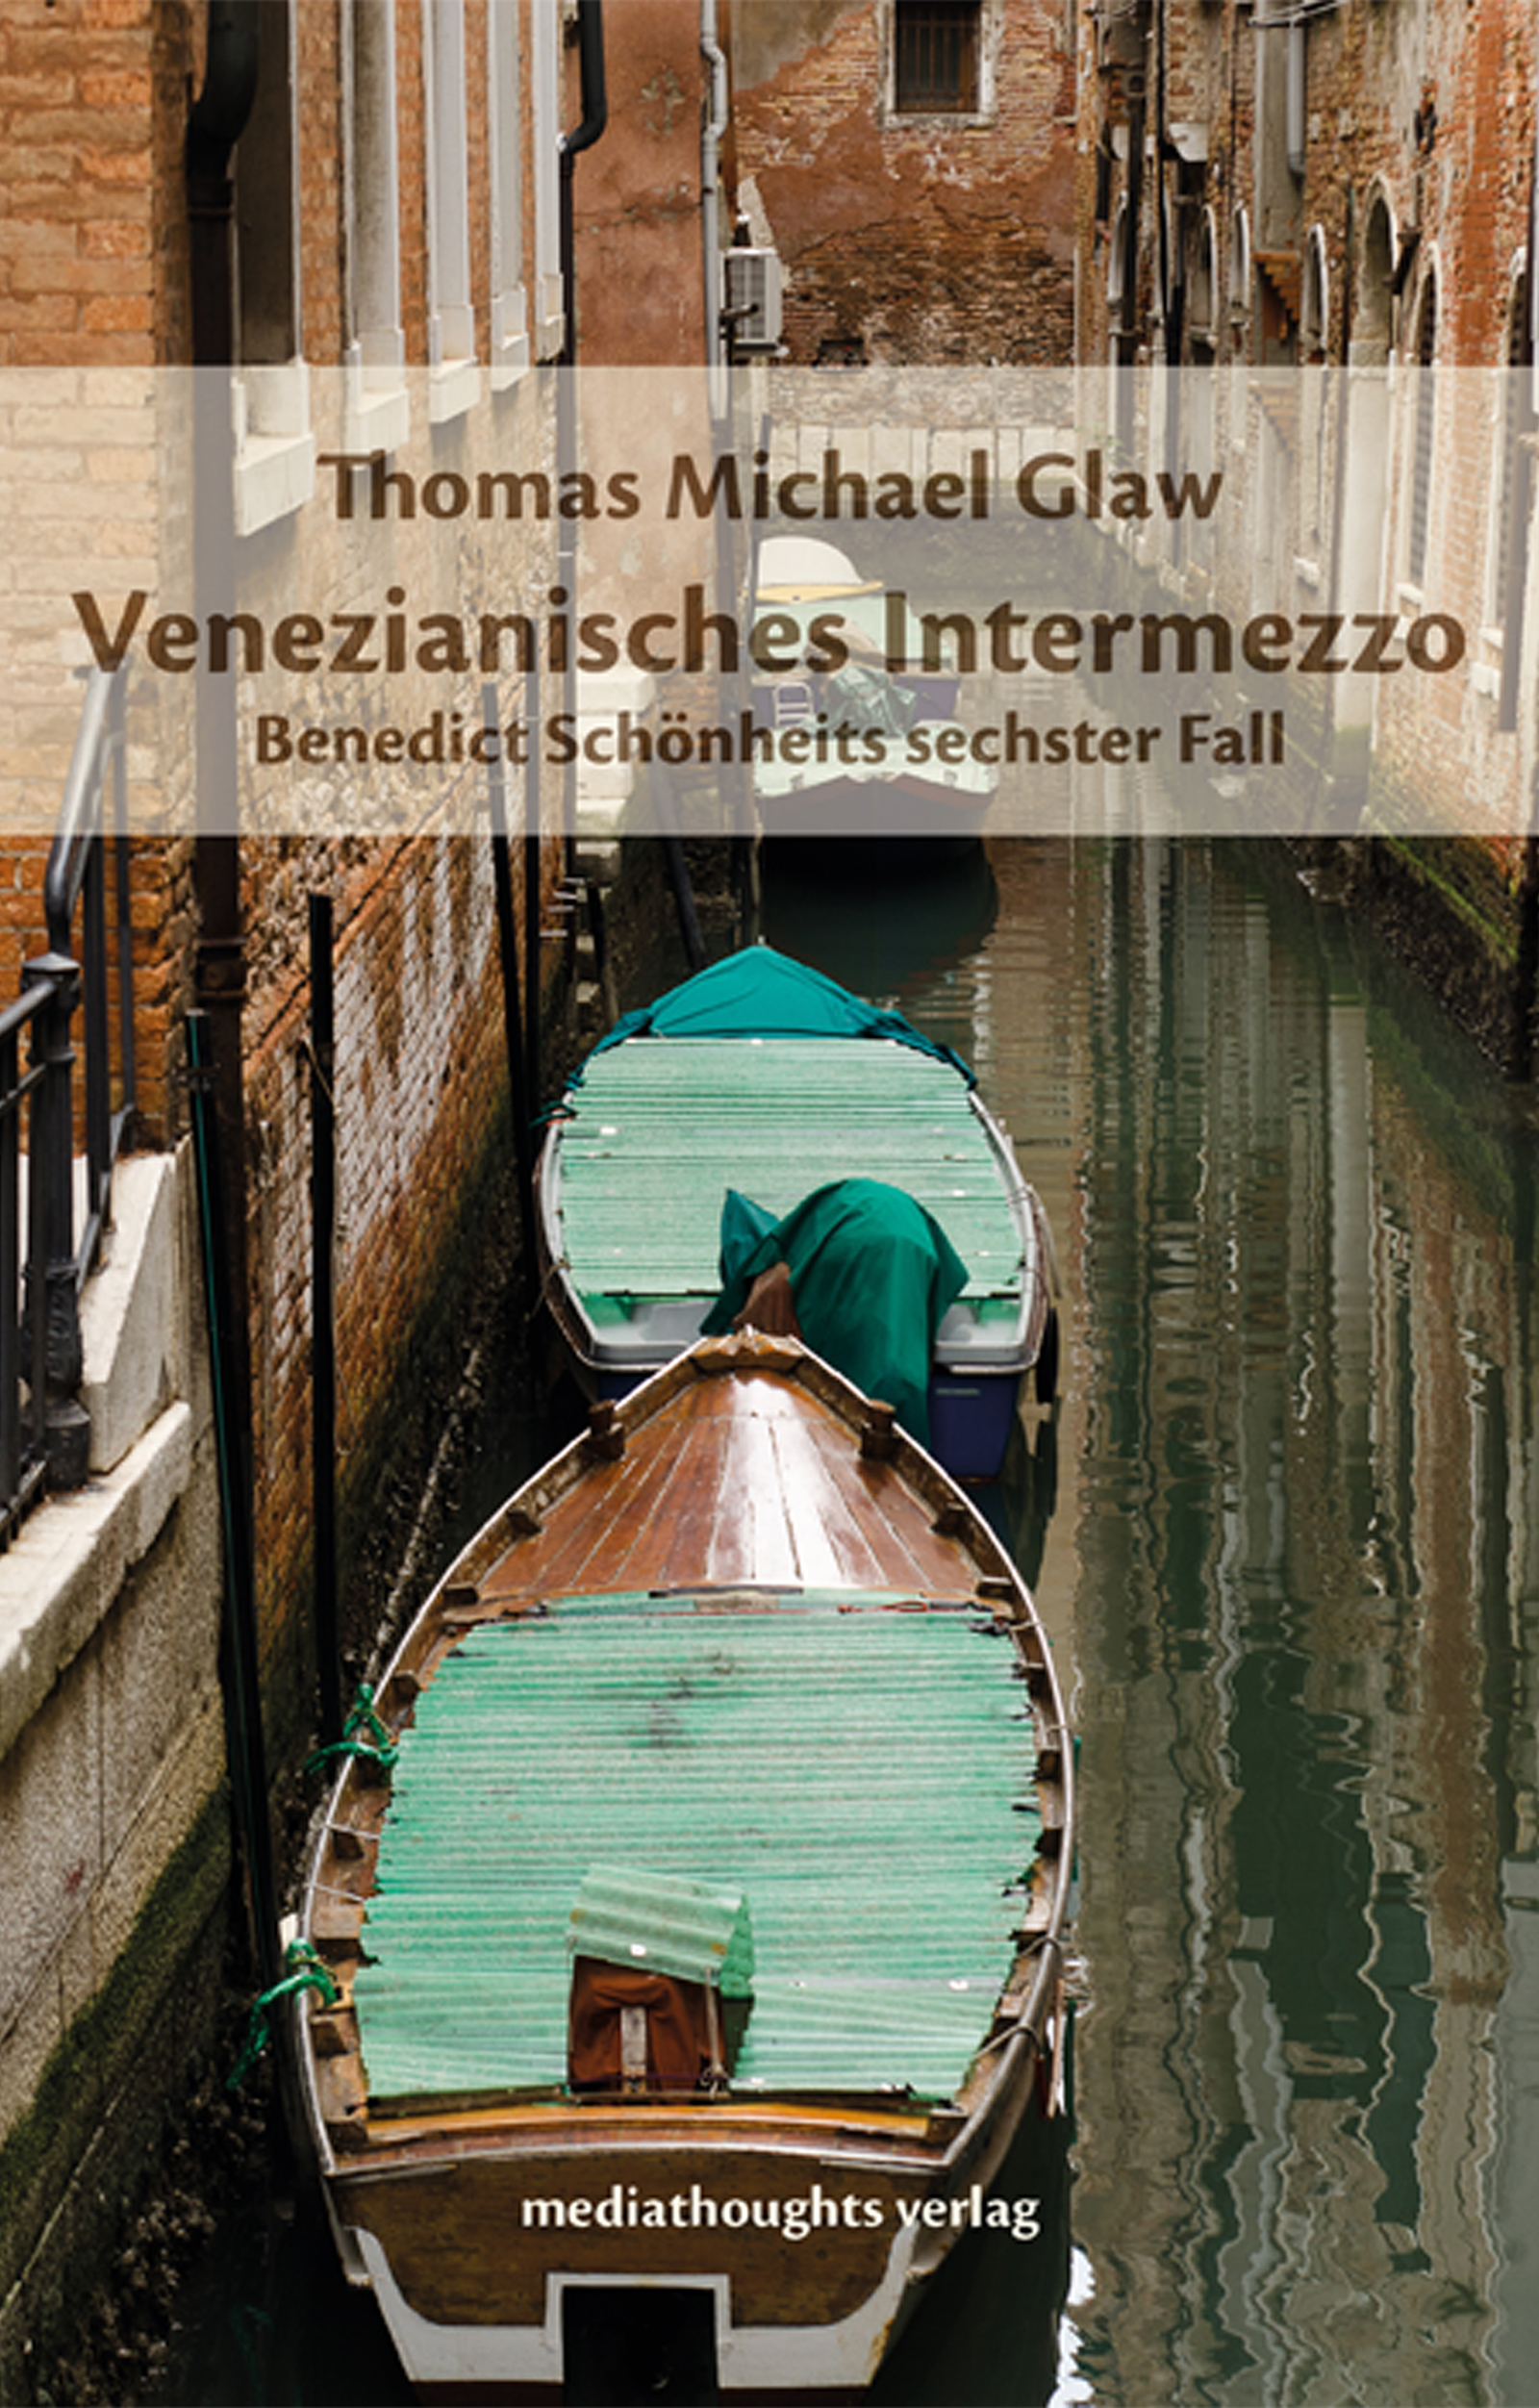 Thomas Michael Glaw - Venezianisches Intermezzo